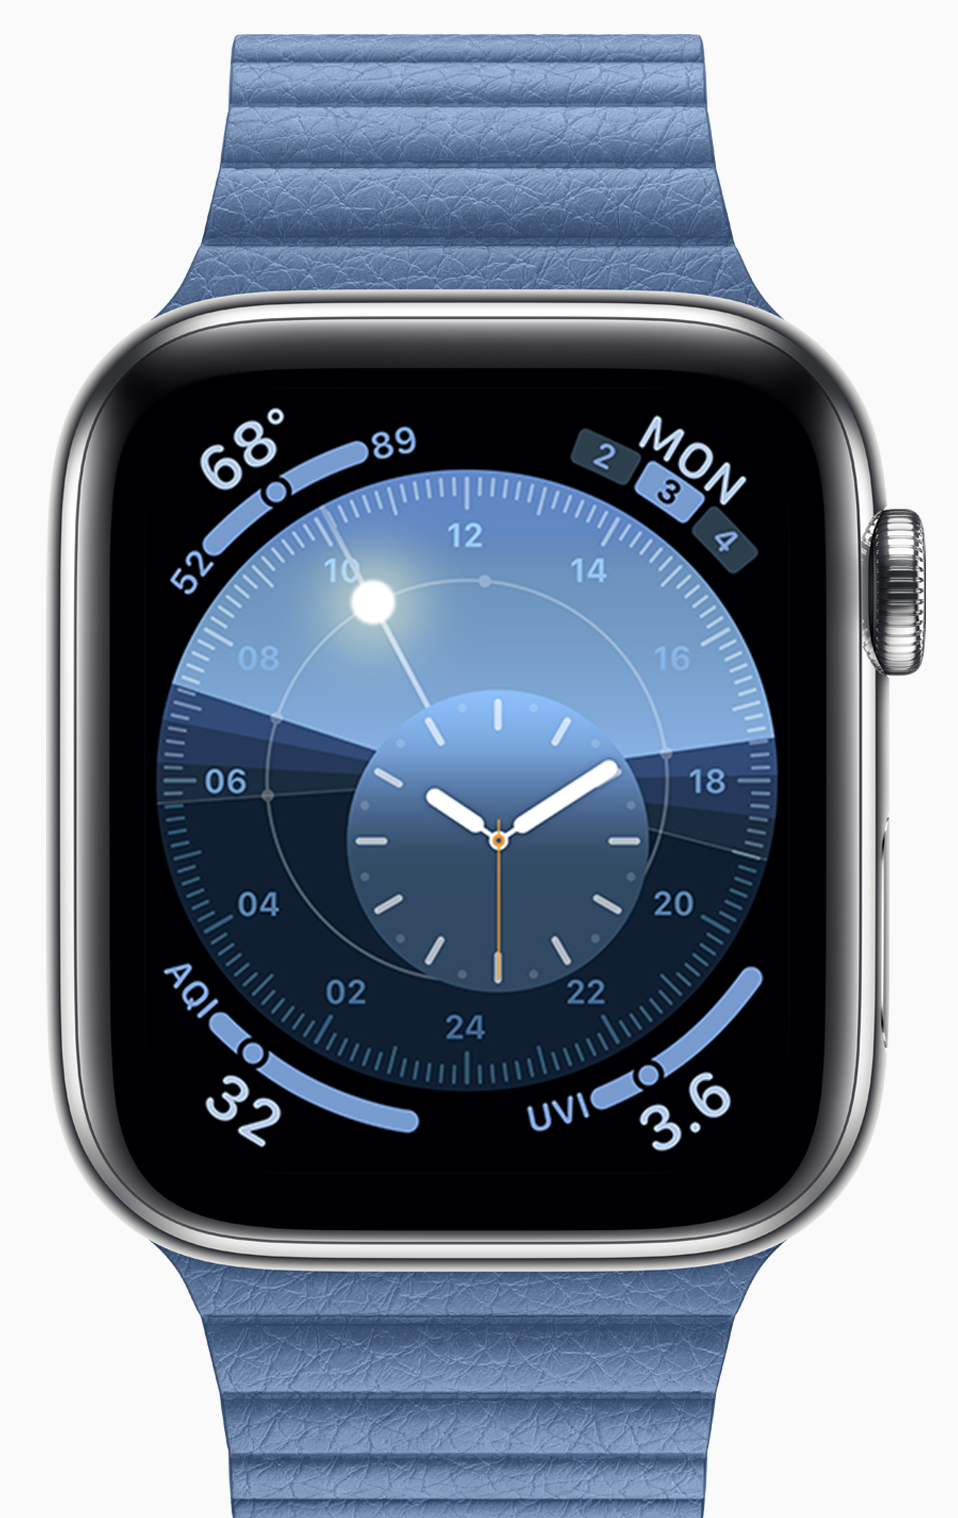 Apple posts fourth watchOS 6 developer beta